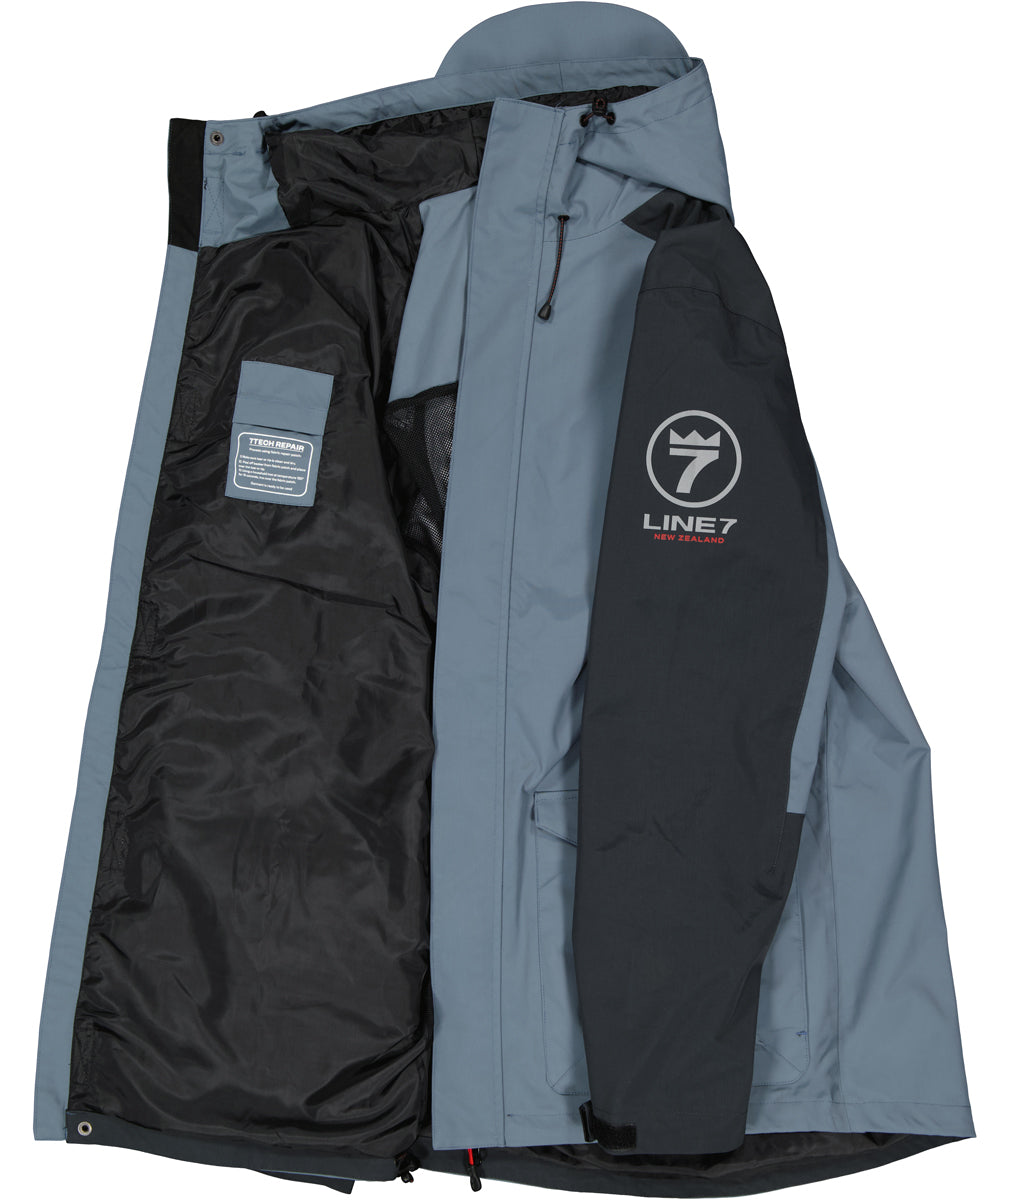 Line 7 Men's Storm Armour10 Waterproof Jacket